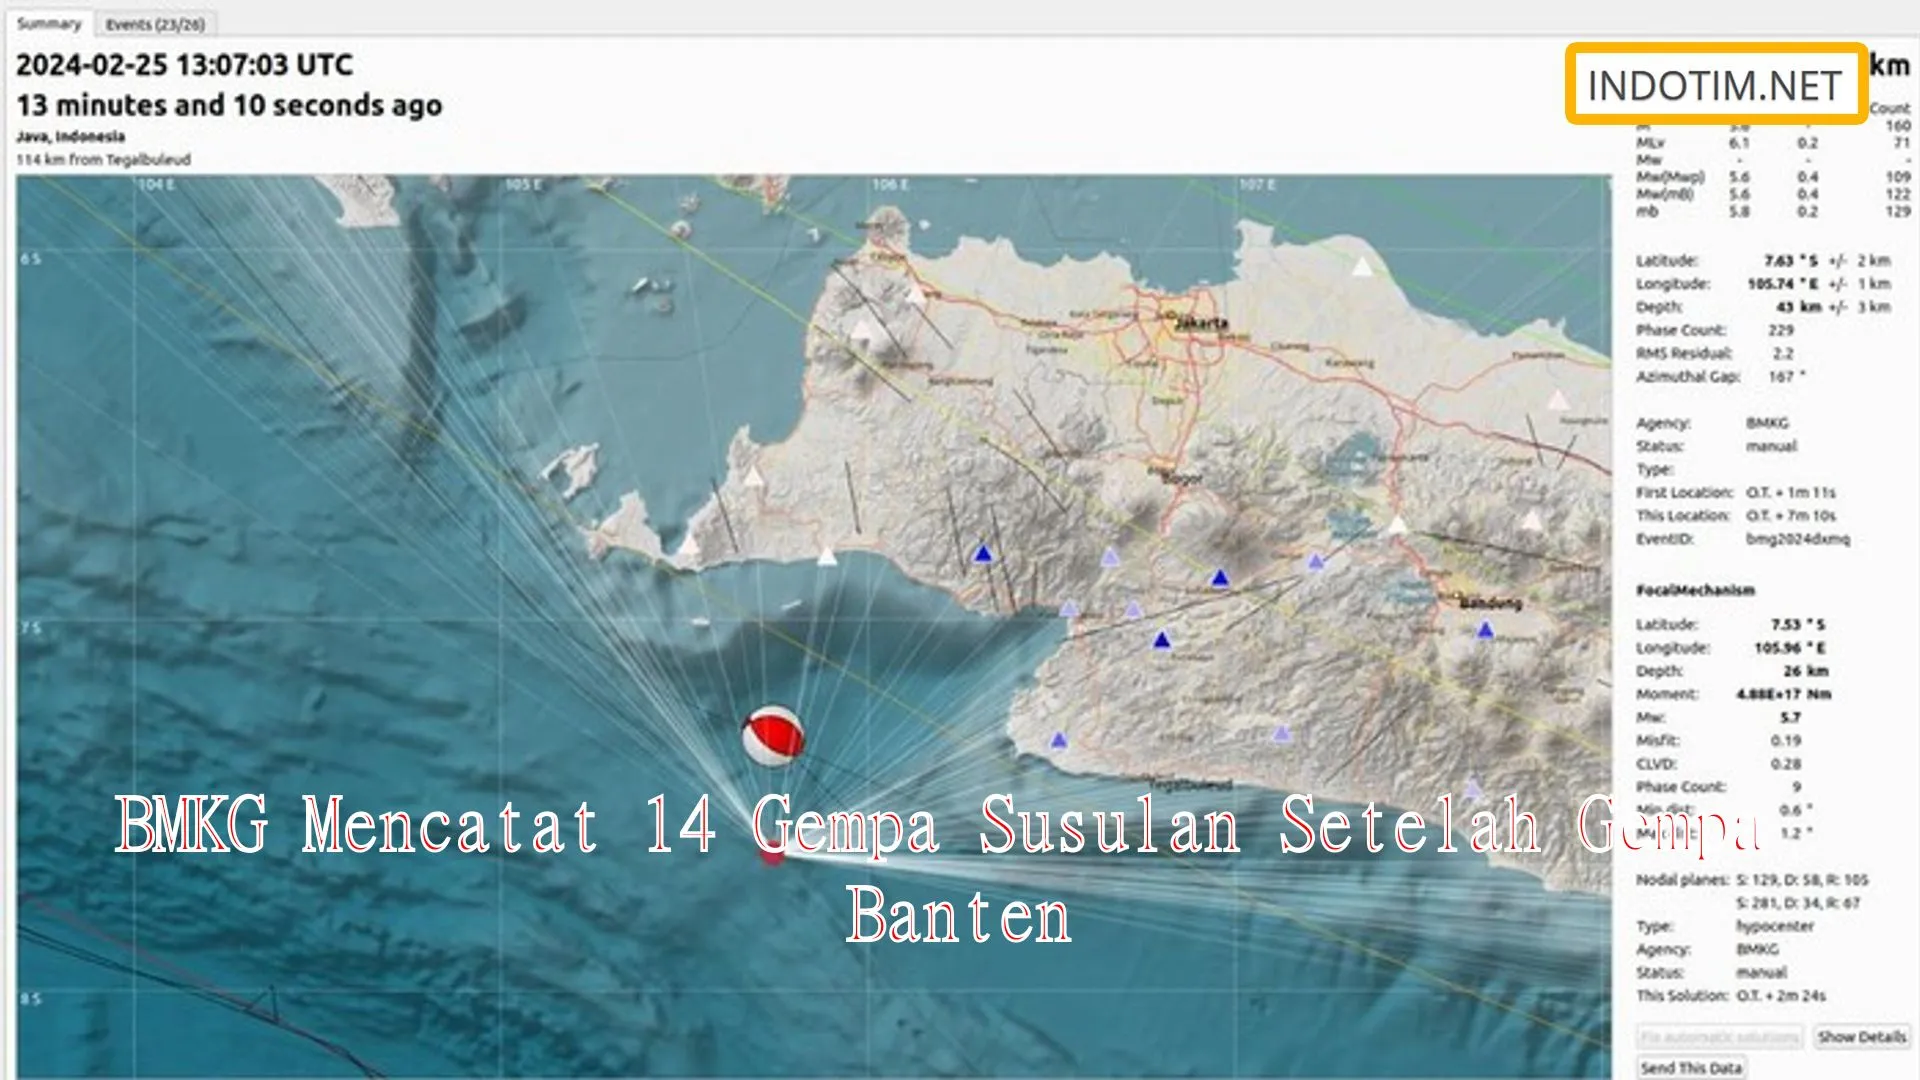 BMKG Mencatat 14 Gempa Susulan Setelah Gempa Banten